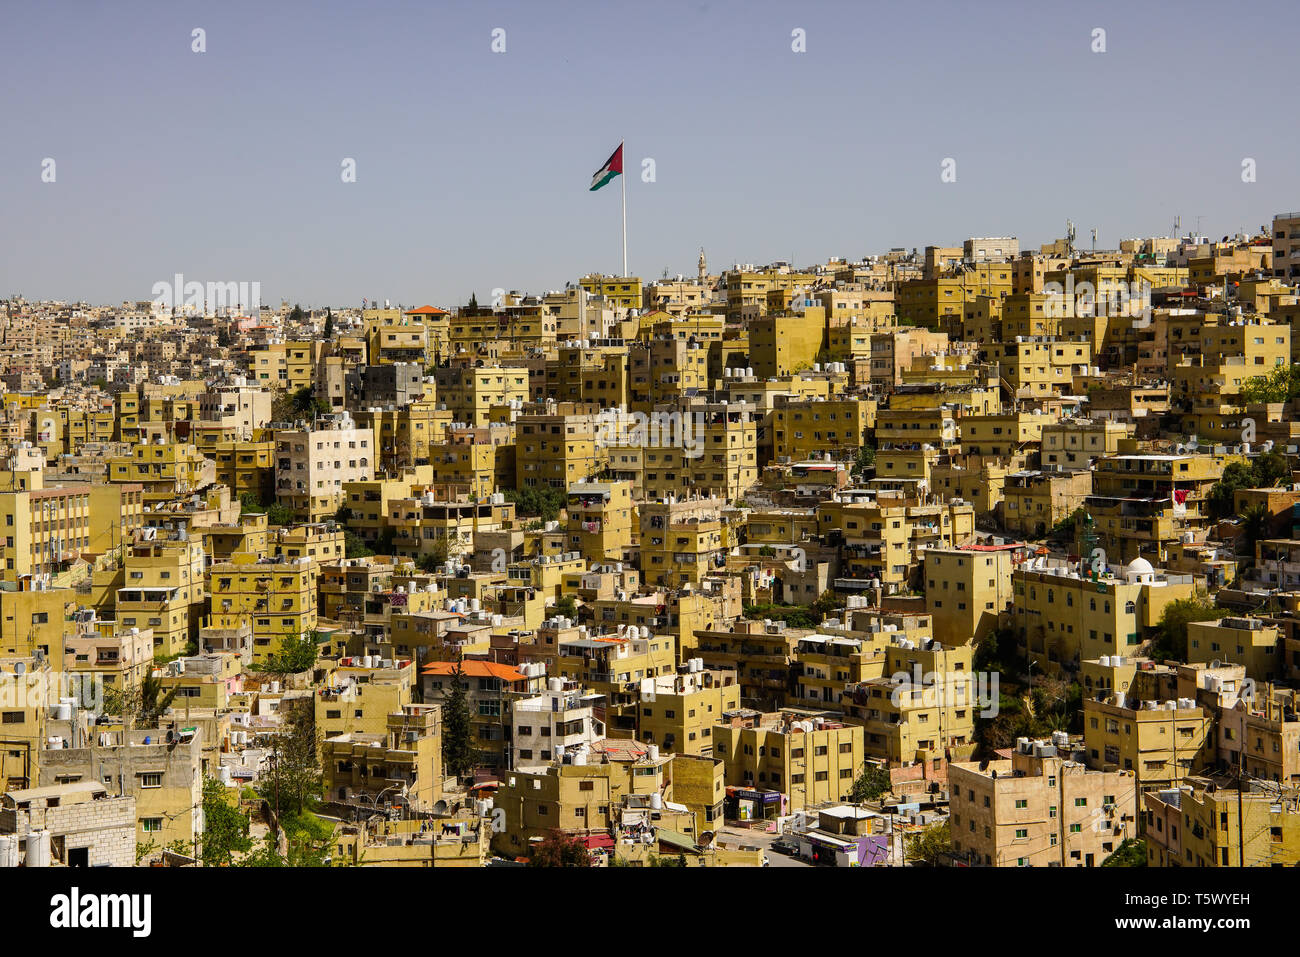 Amman jordan time hi-res stock photography and images - Alamy